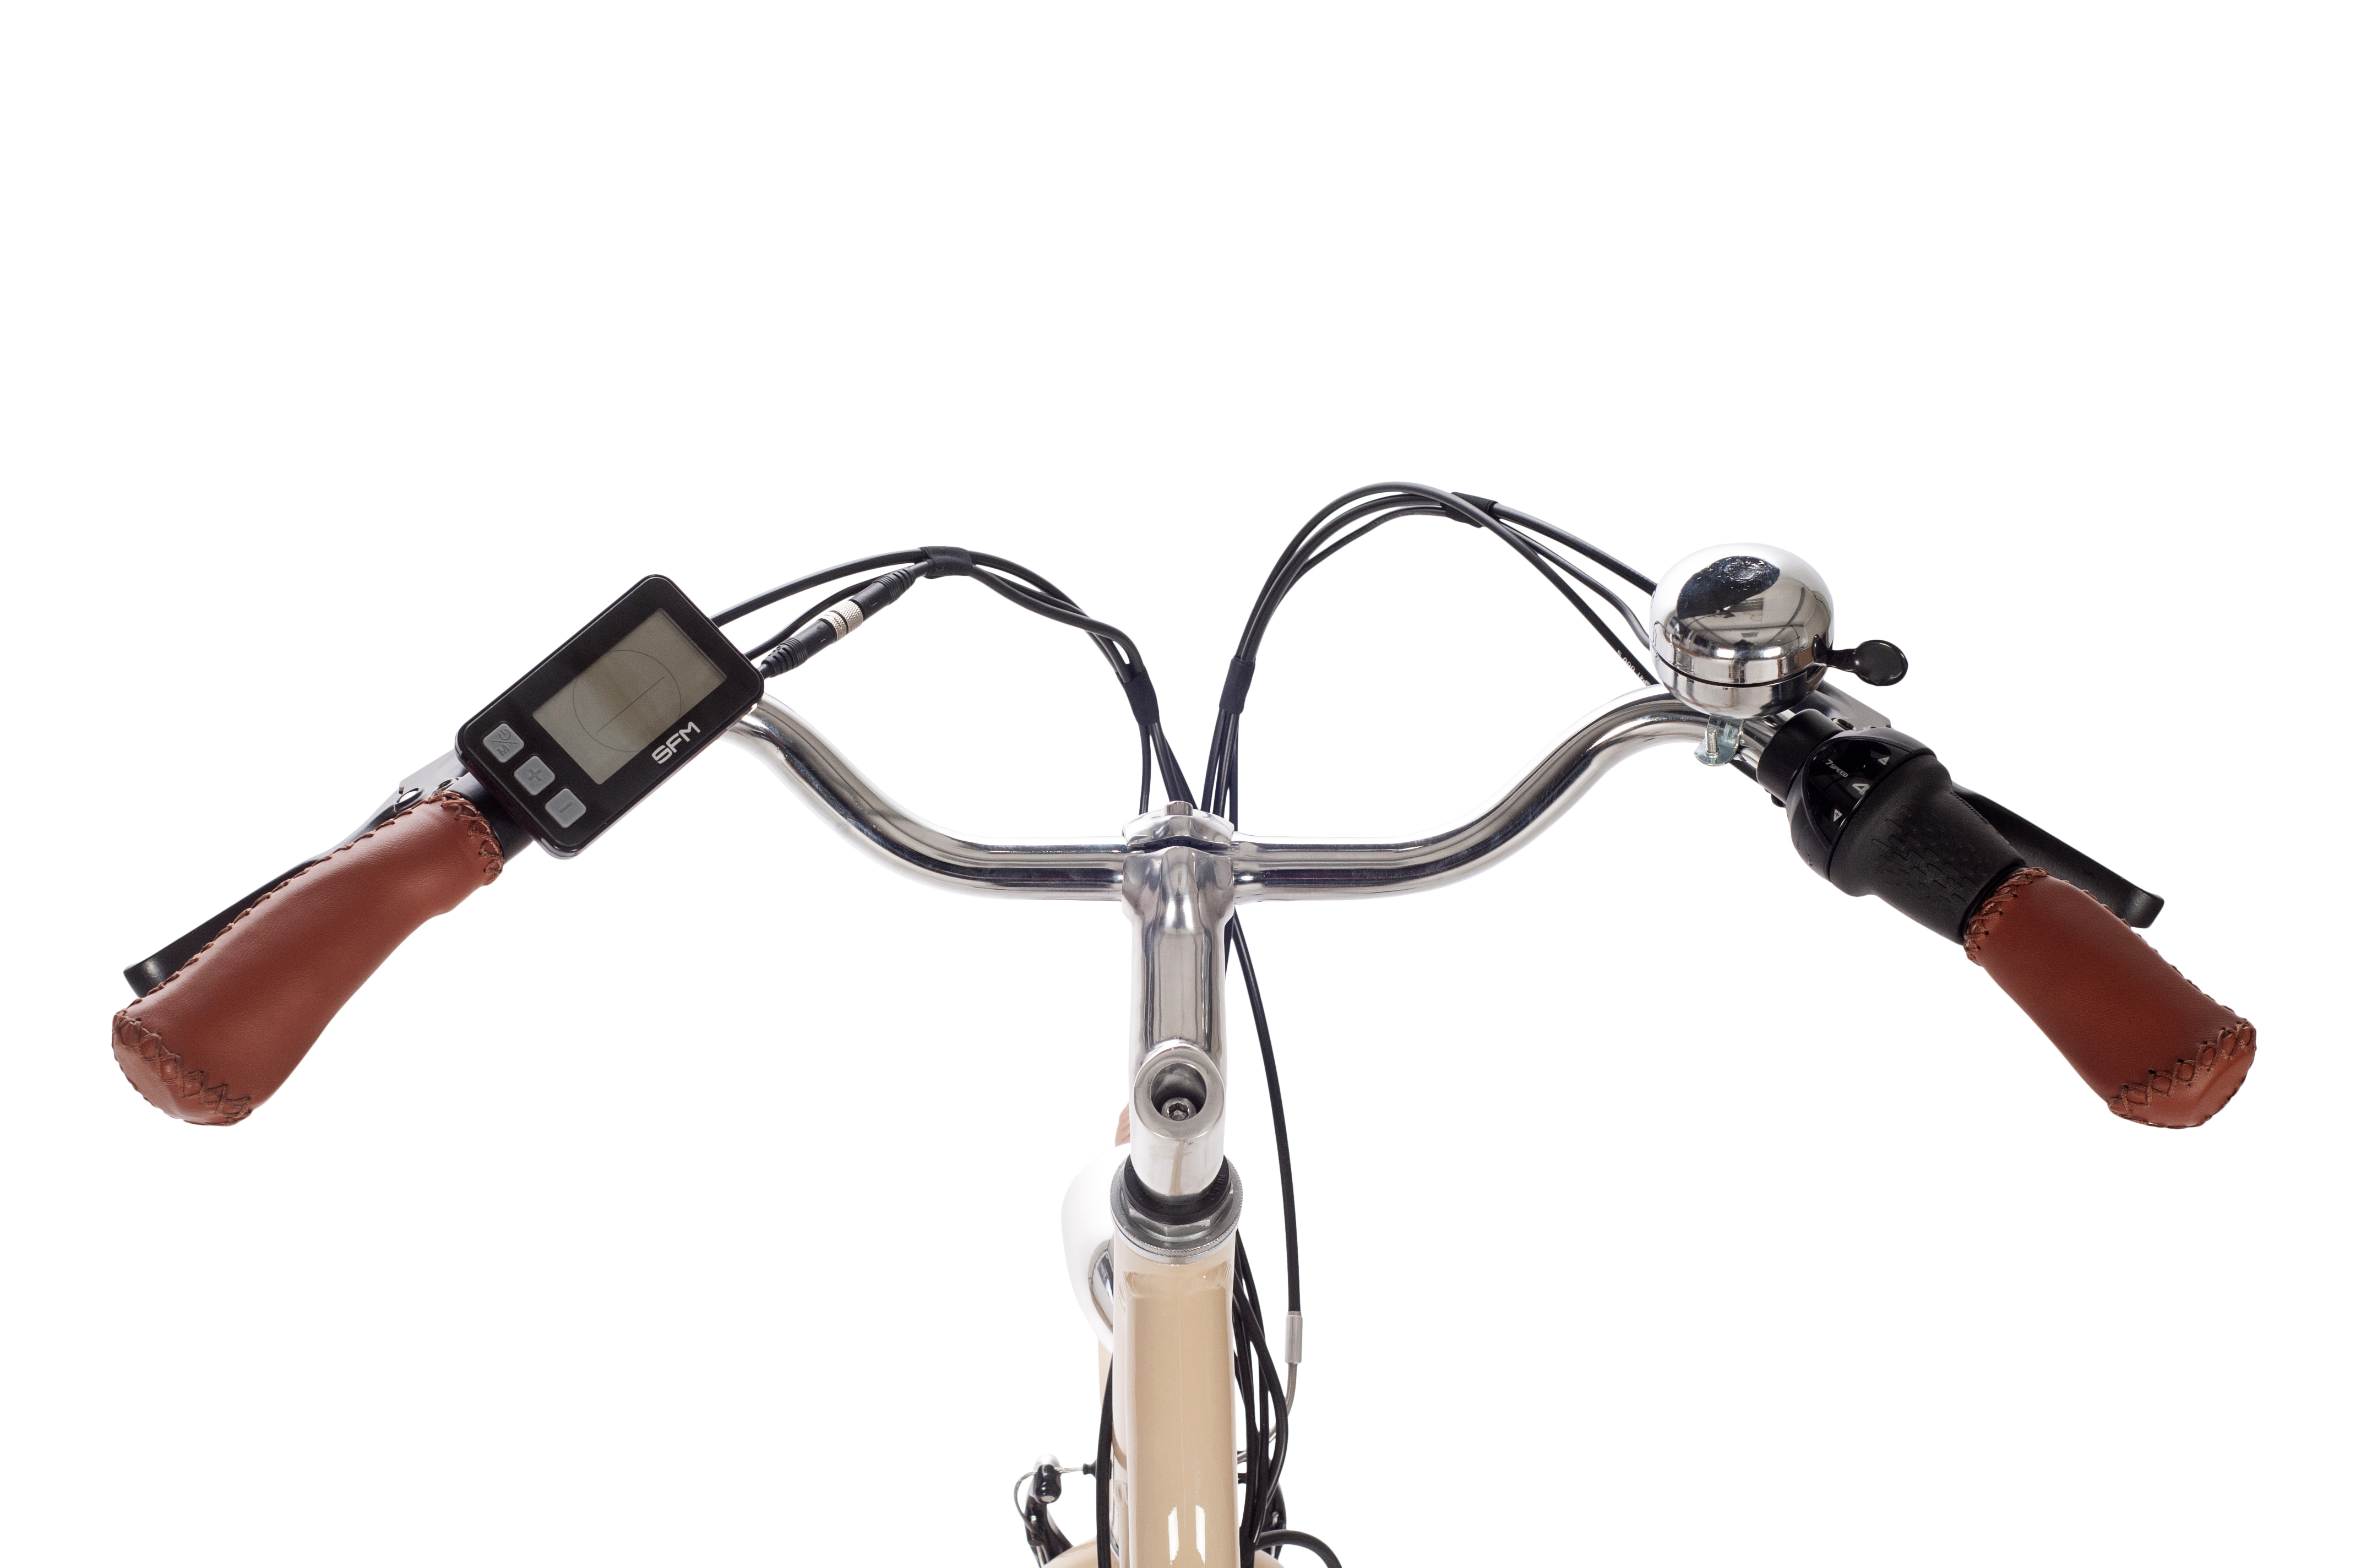 SAXONETTE CLASSIC PLUS 2.0 E-Bike mit Rücktrittbremse